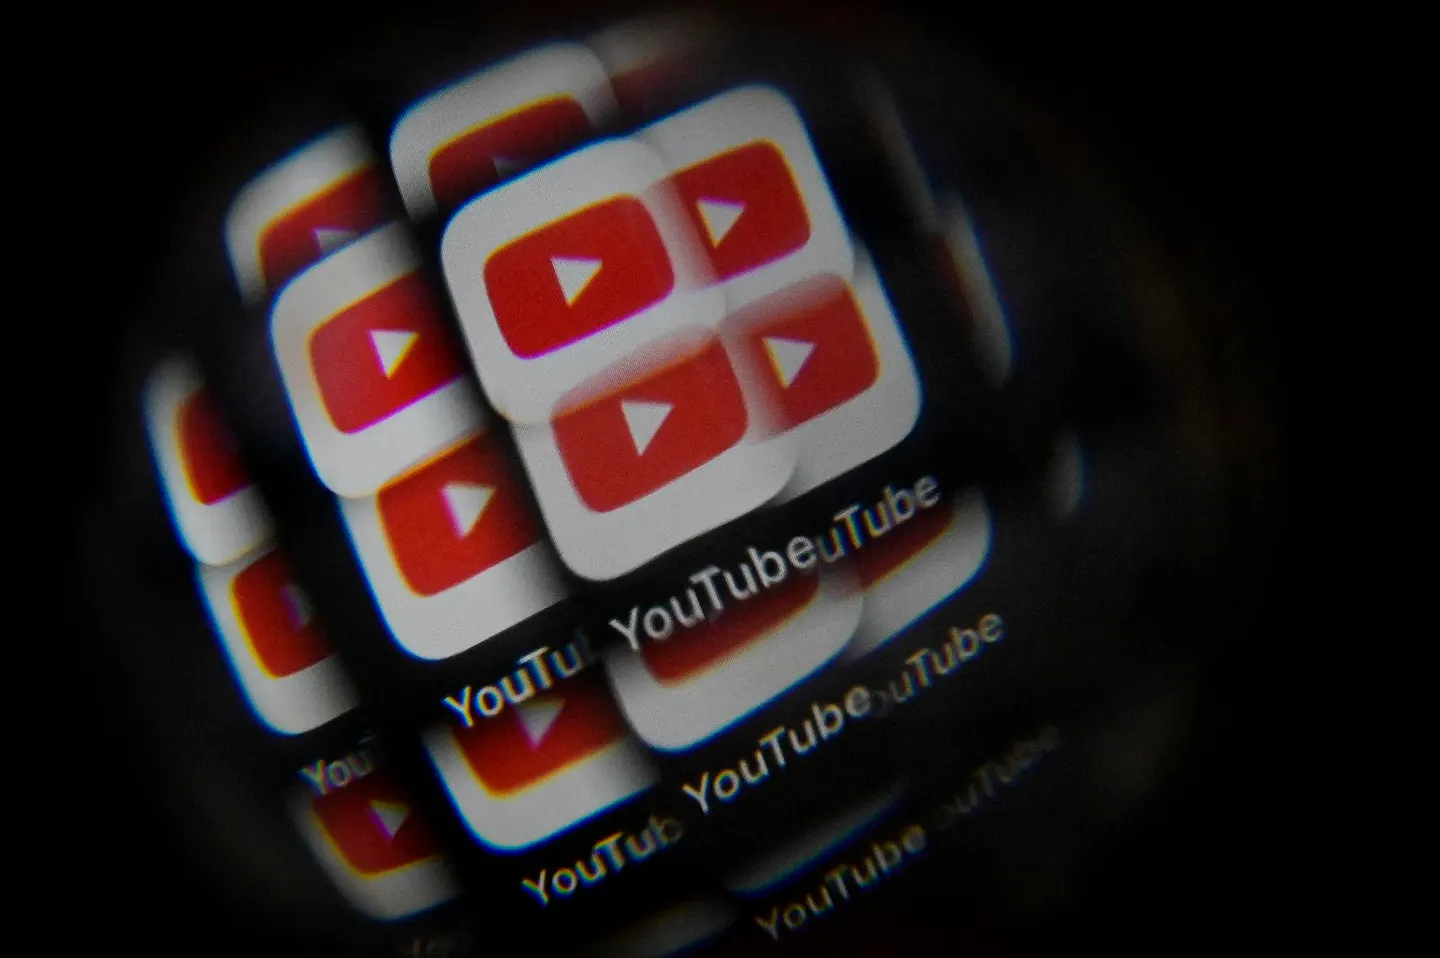 Google alojÃ³ mÃ¡s de 100 videos de YouTube que promocionan pornografÃ­a deepfake con IA